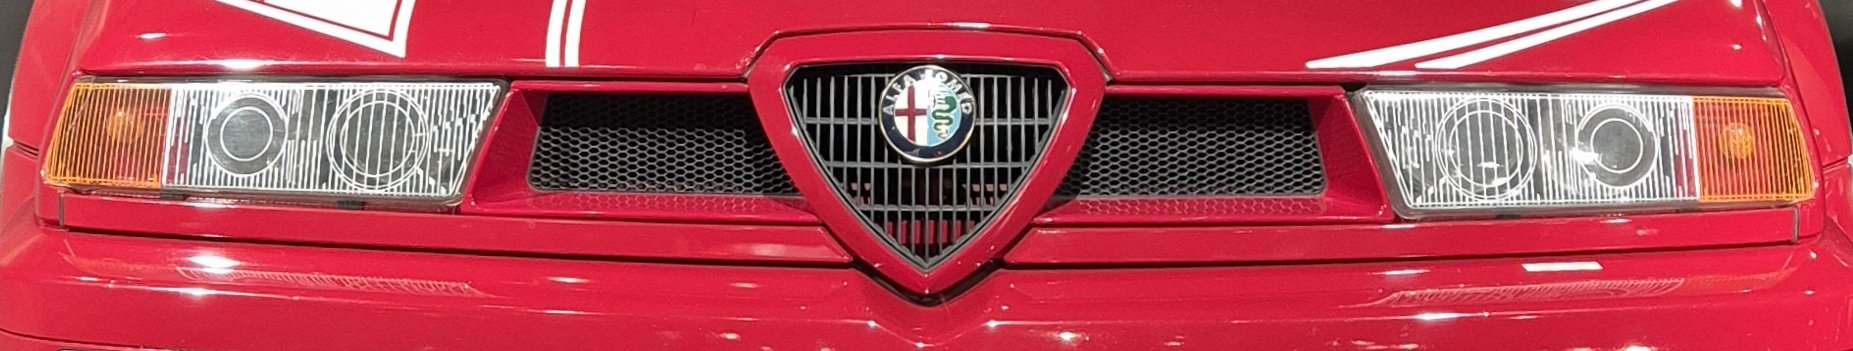 Alfaclub Alfa Romeo 155 Register